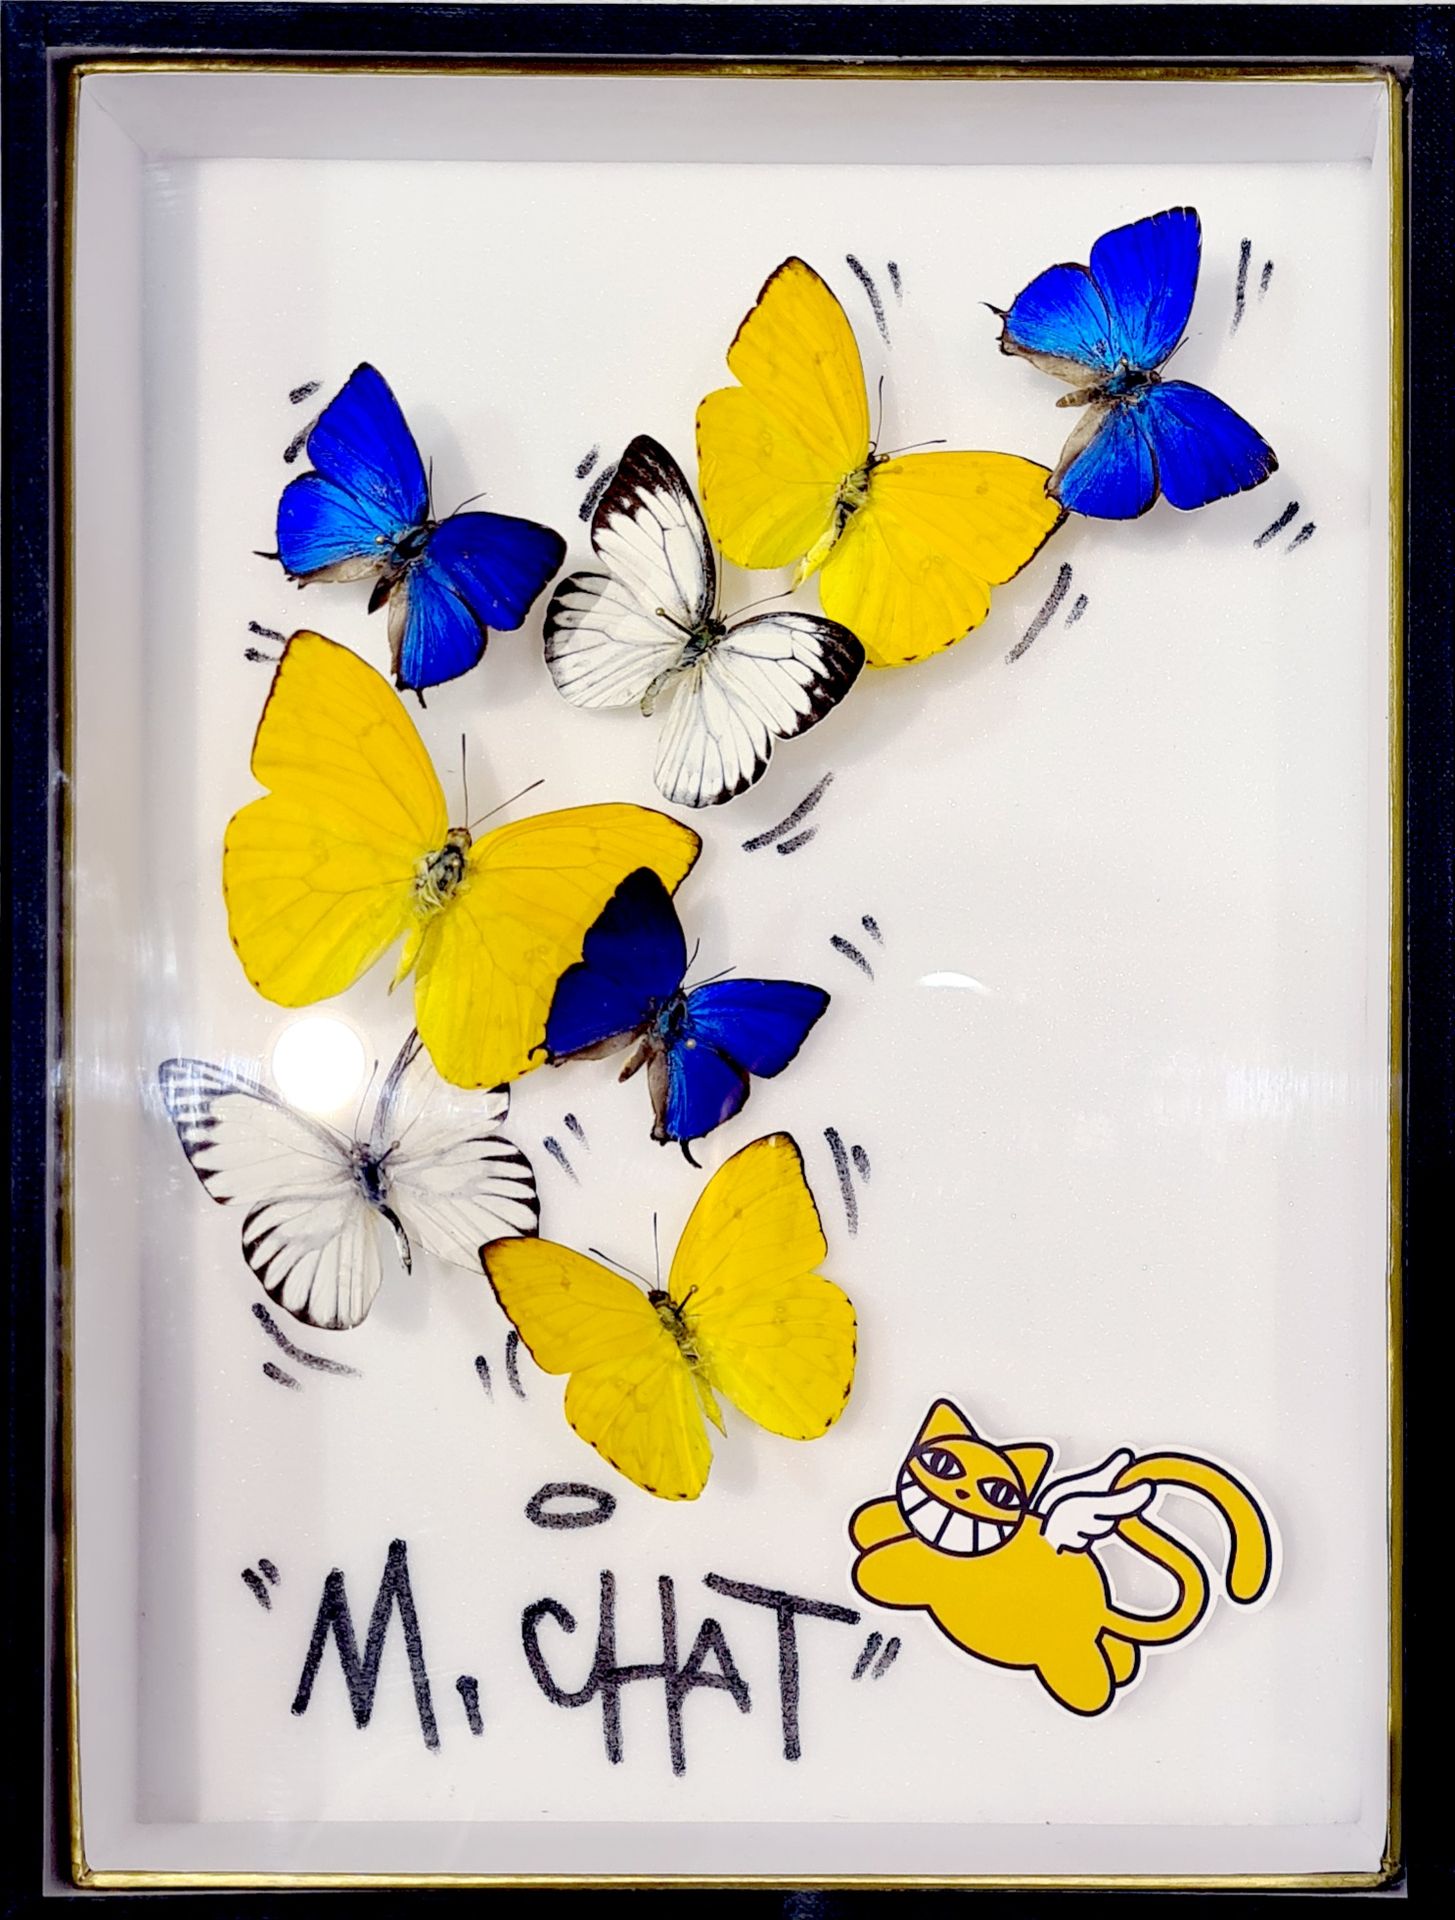 B. Pietri B. Pietri - M. Chat

Echte Schmetterlinge und Katze von M. Chat, angeh&hellip;